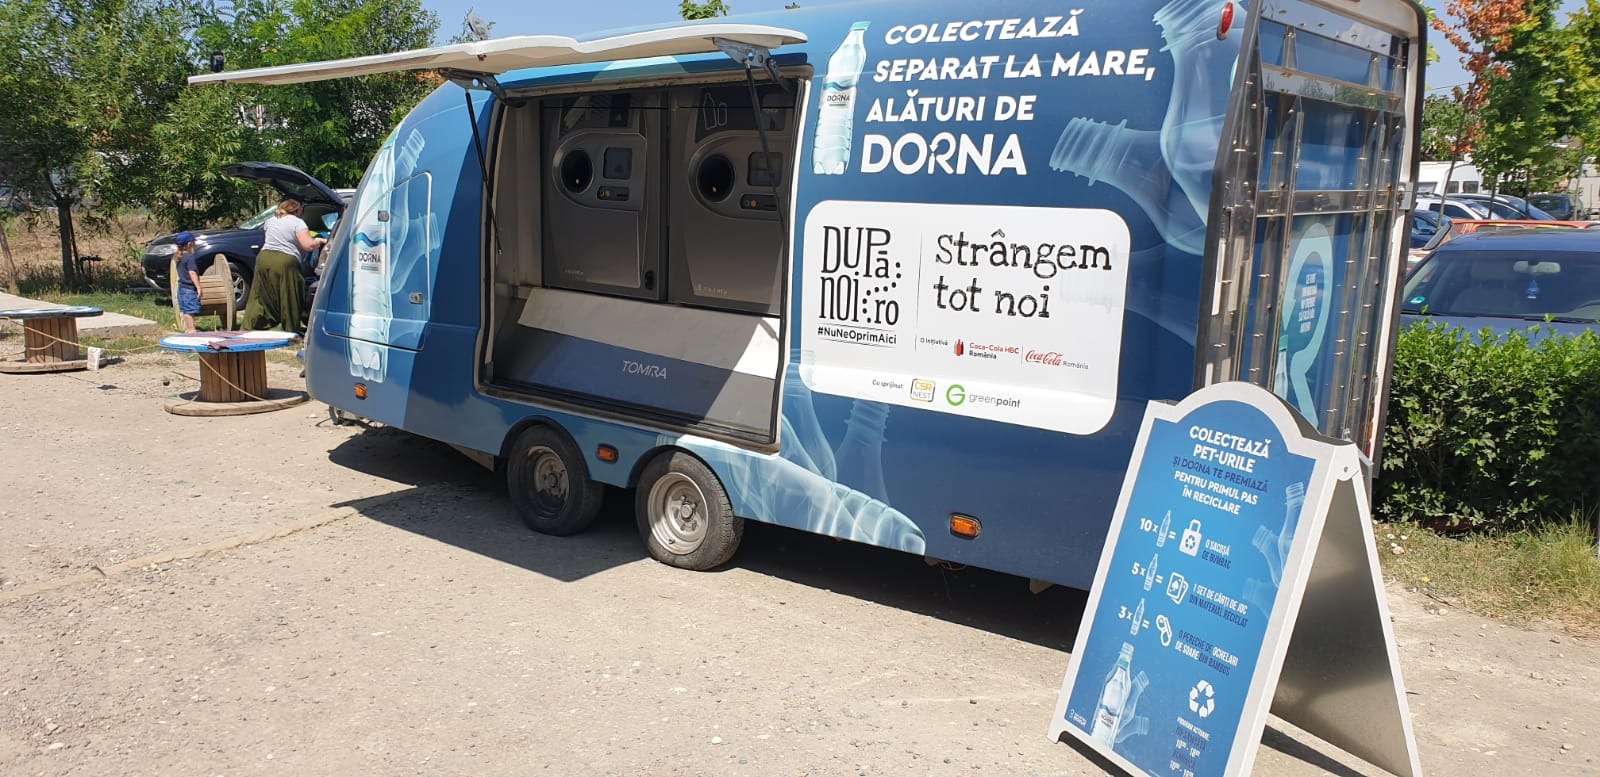 Sistemul Coca-Cola România și Dorna lansează o nouă inițiativă de colectare separată pe litoral, sub umbrela După noi, strângem tot noi